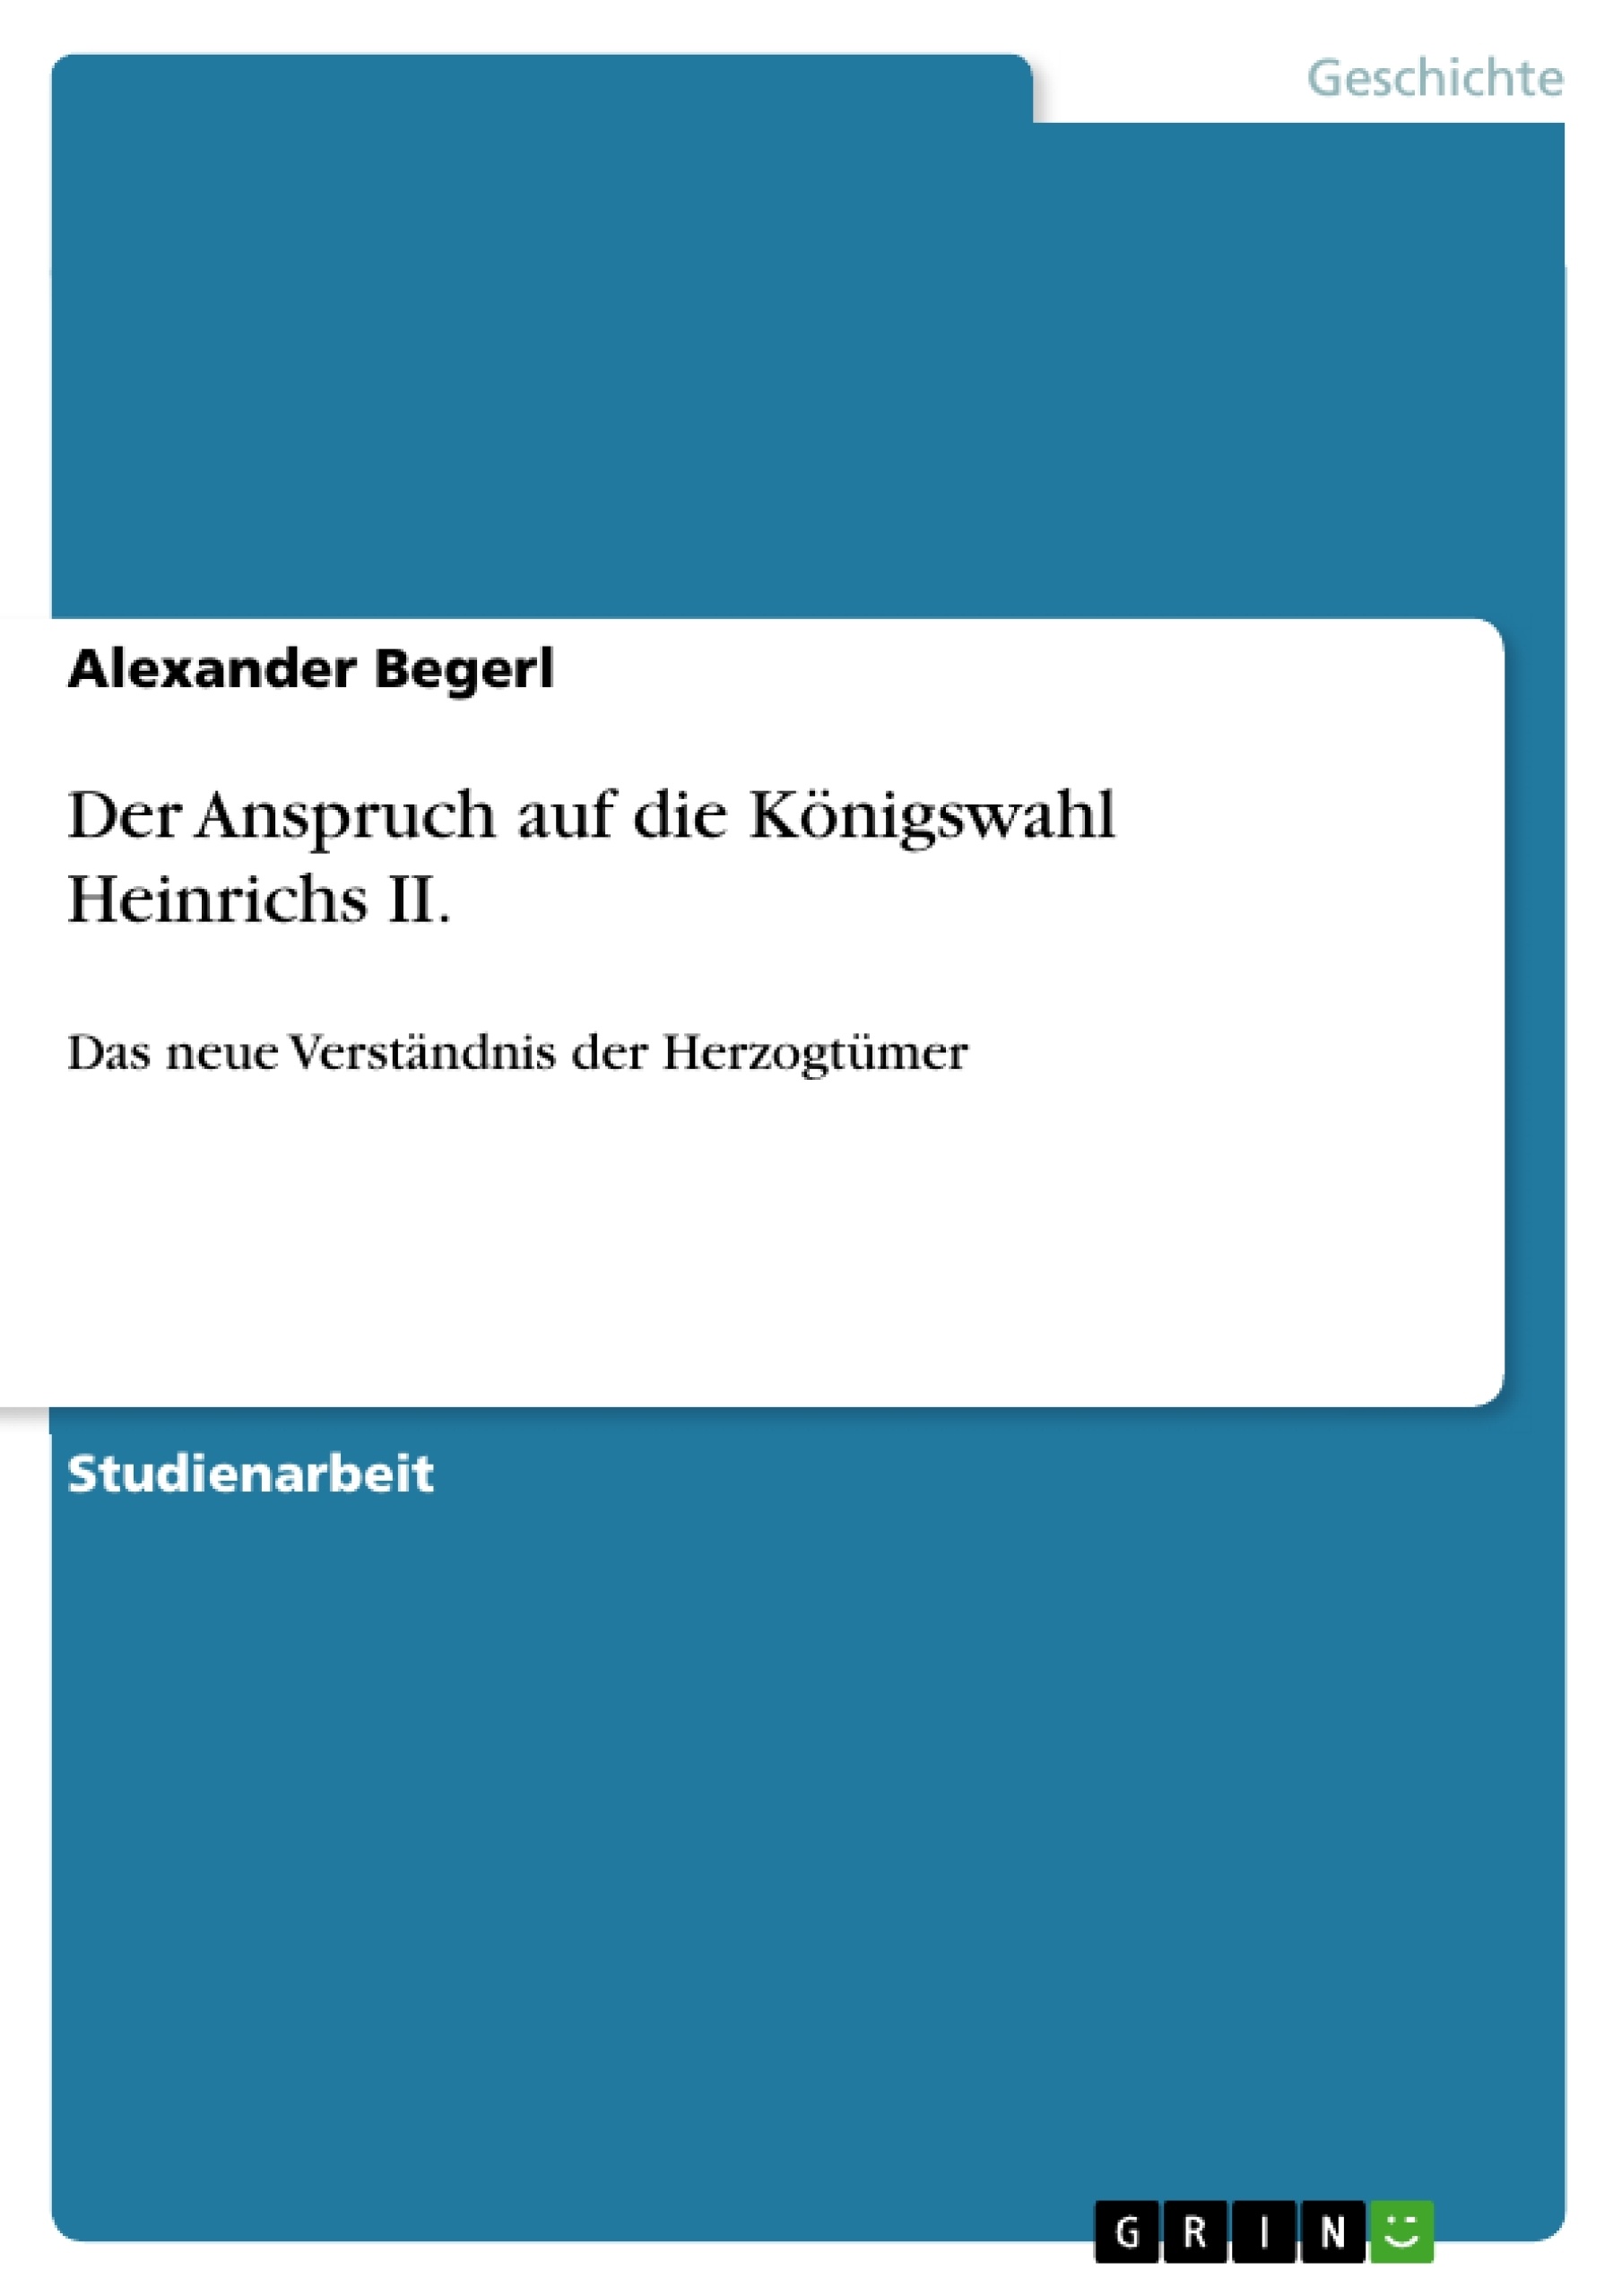 Titre: Der Anspruch auf die Königswahl Heinrichs II.